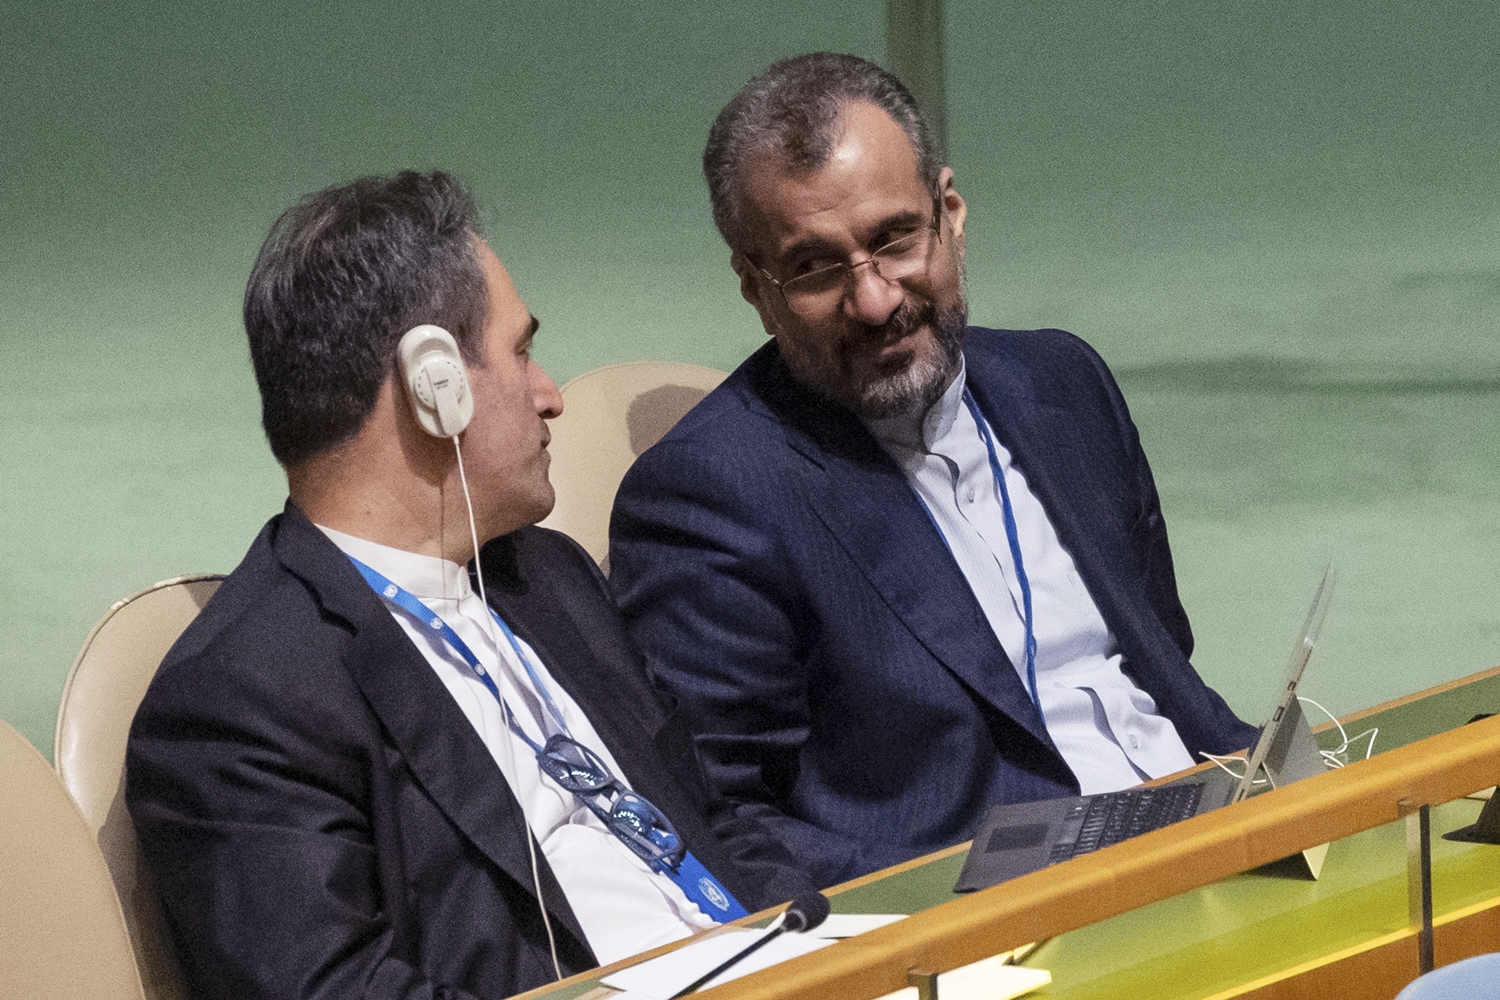 Πυρηνικά όπλα: Oι Συνθήκες που δεν εφαρμόζονται, η σχέση με την ειρηνική χρήση, το πρόγραμμα του Ιράν και ο Σολτς